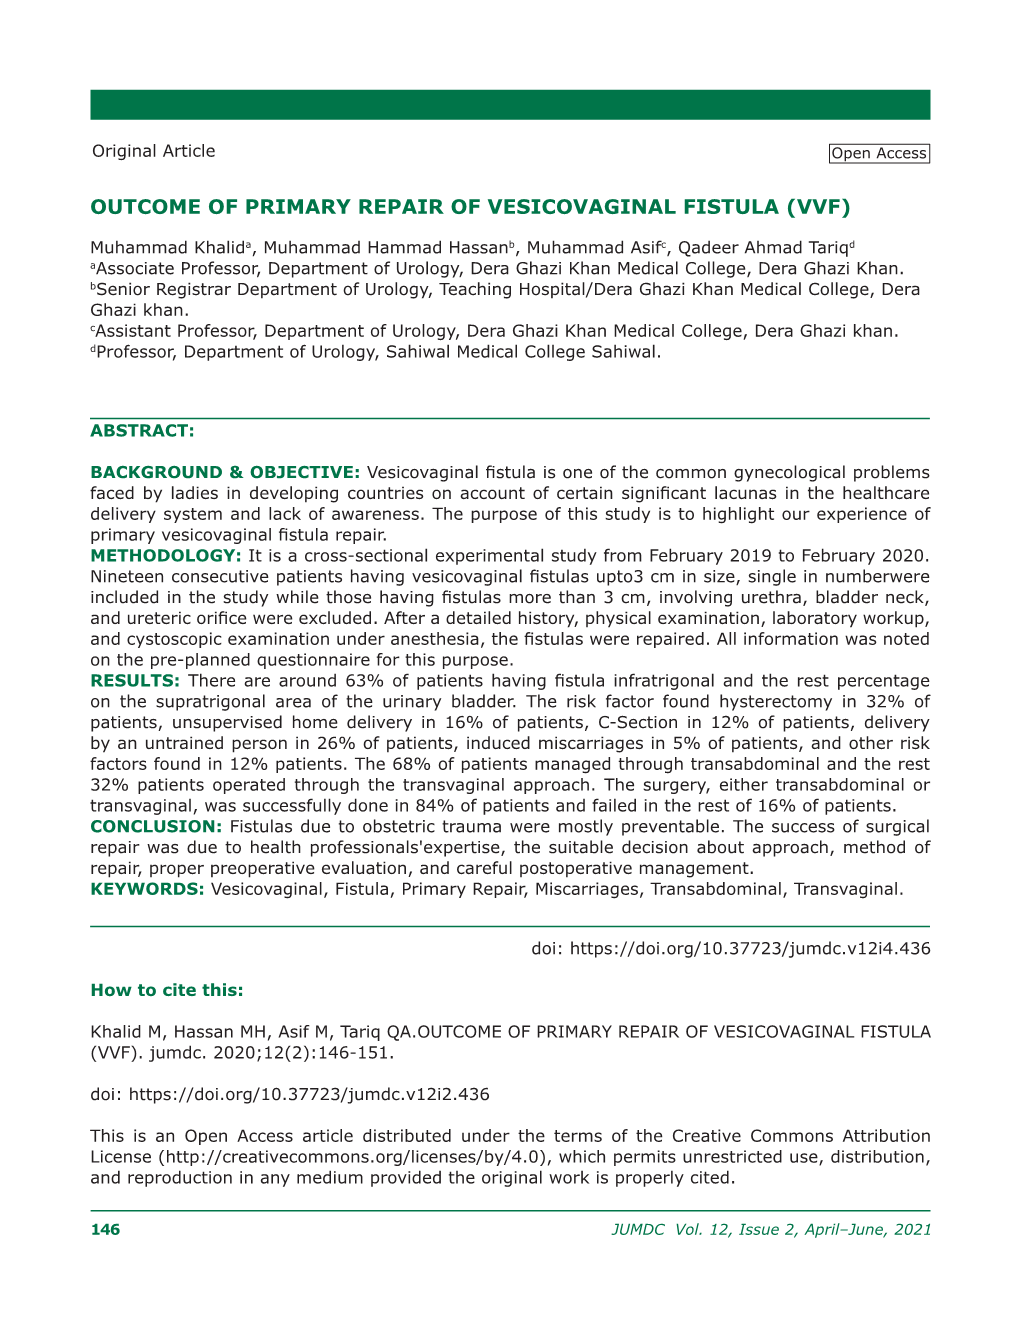 Outcome of Primary Repair of Vesicovaginal Fistula (Vvf)